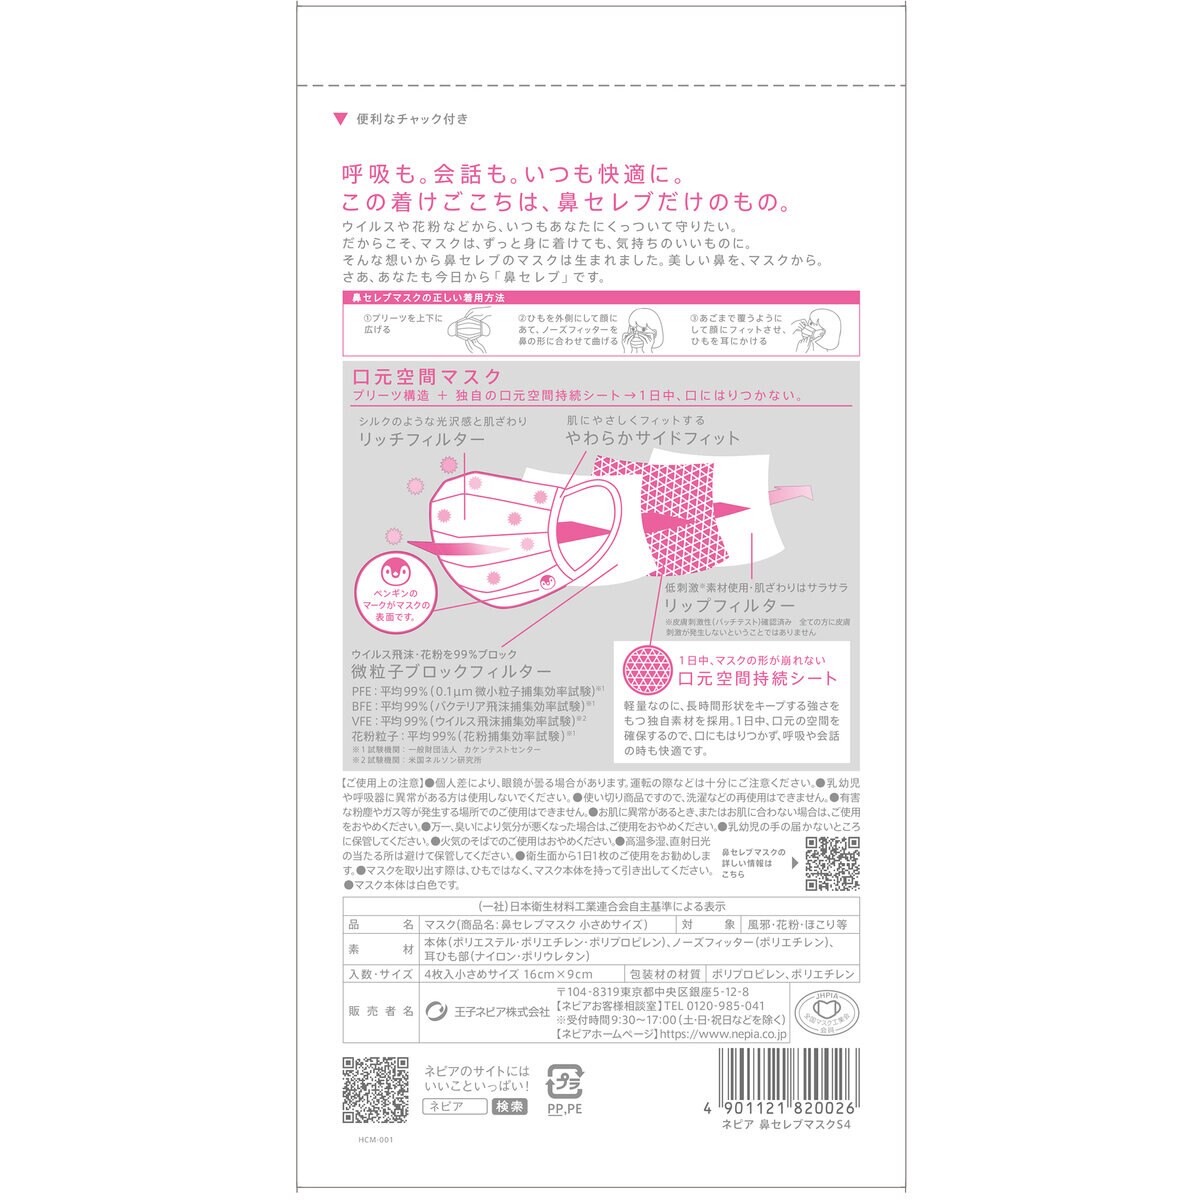 鼻セレブ マスク 小さめサイズ 4 枚入り x 30 | Costco Japan